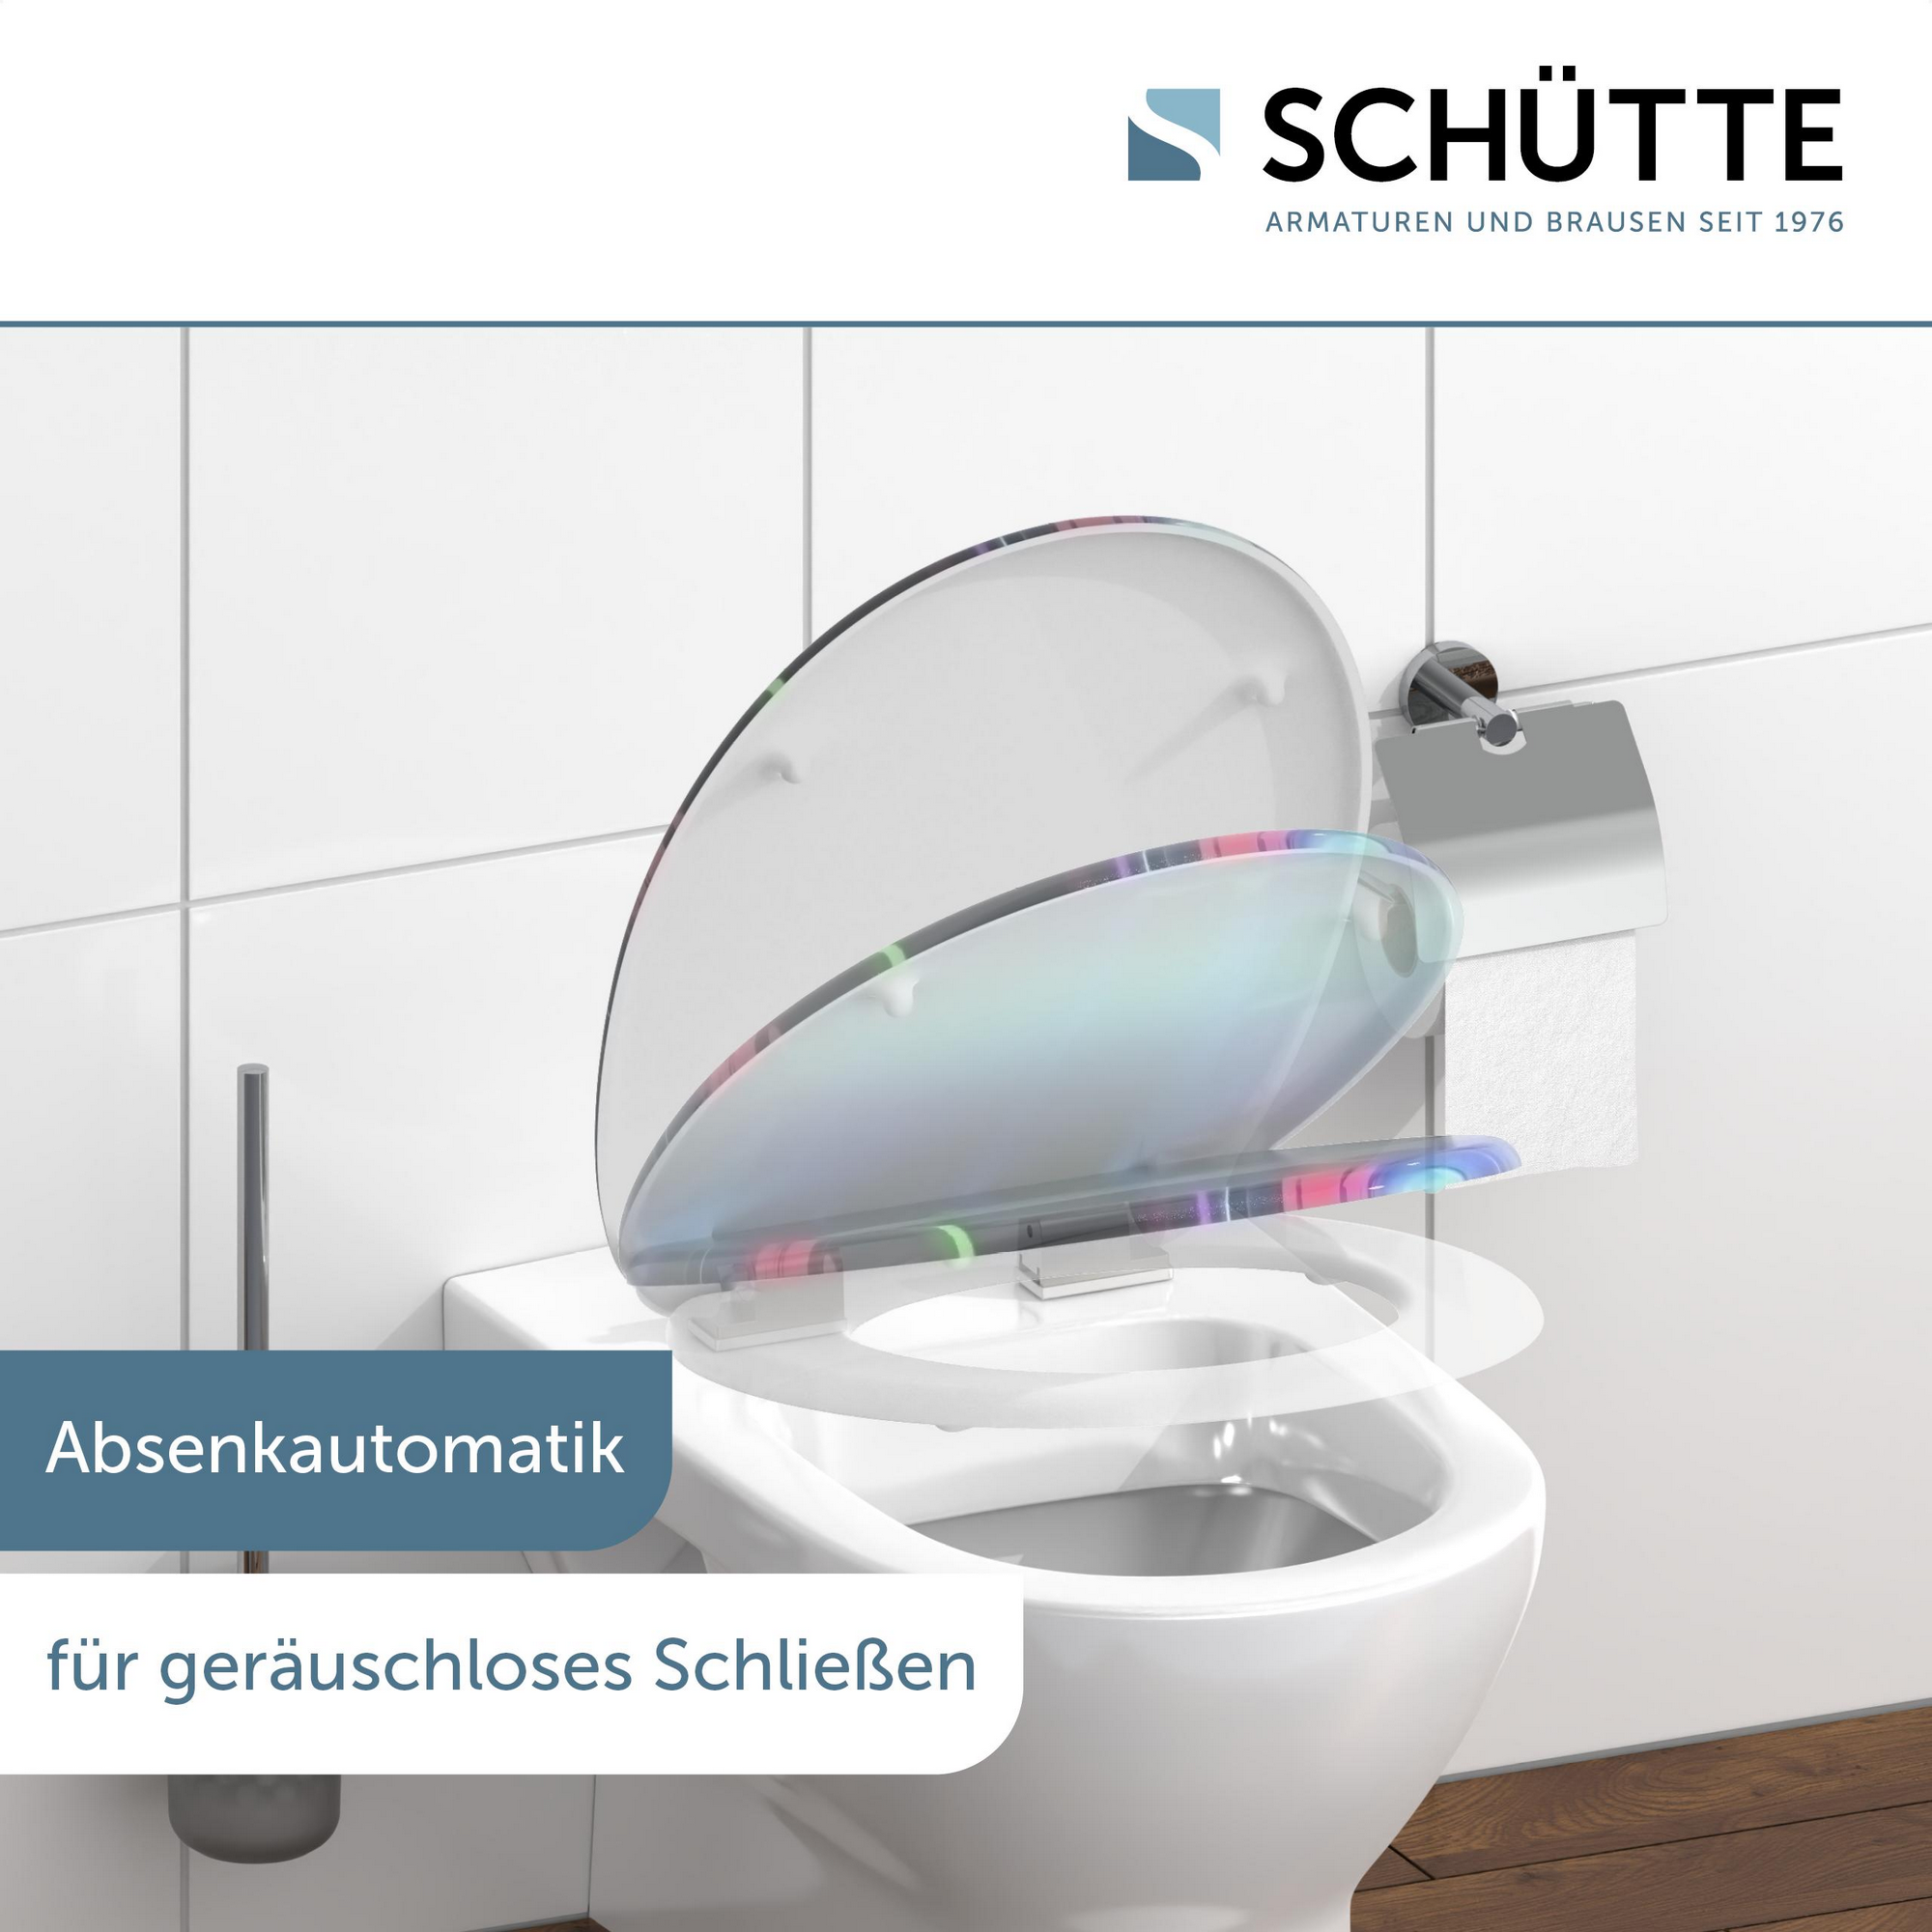 WC-Sitz 'Neon Paint' mit Absenkautomatik bunt 37,5 x 45 cm + product picture